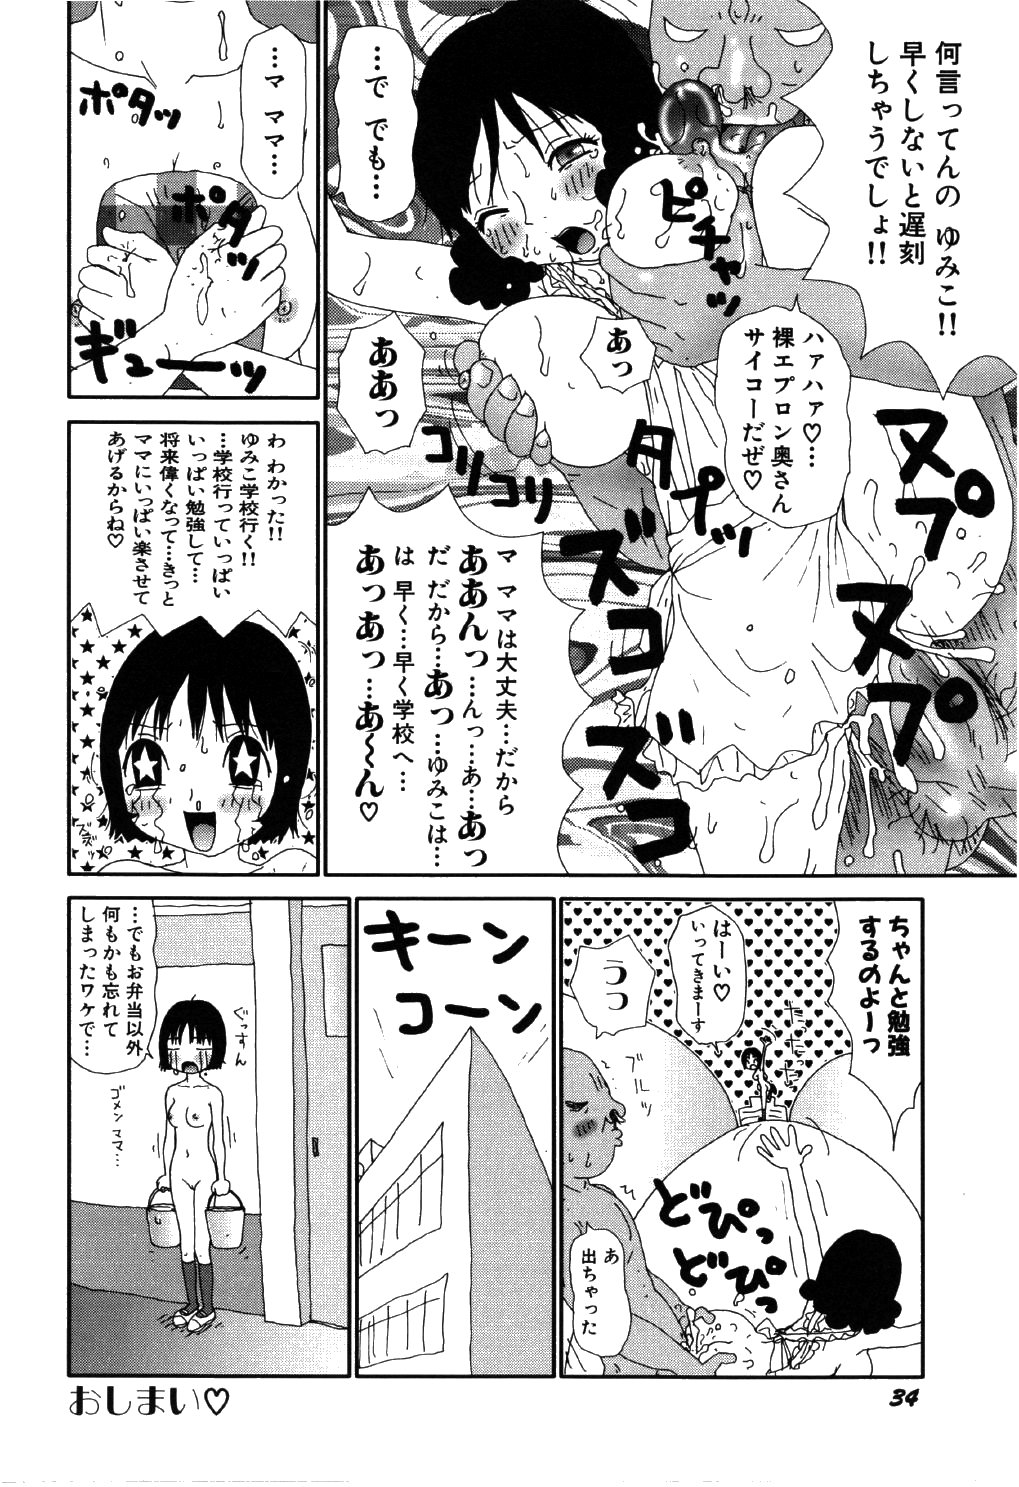 [Machino Henmaru] little yumiko chan page 38 full